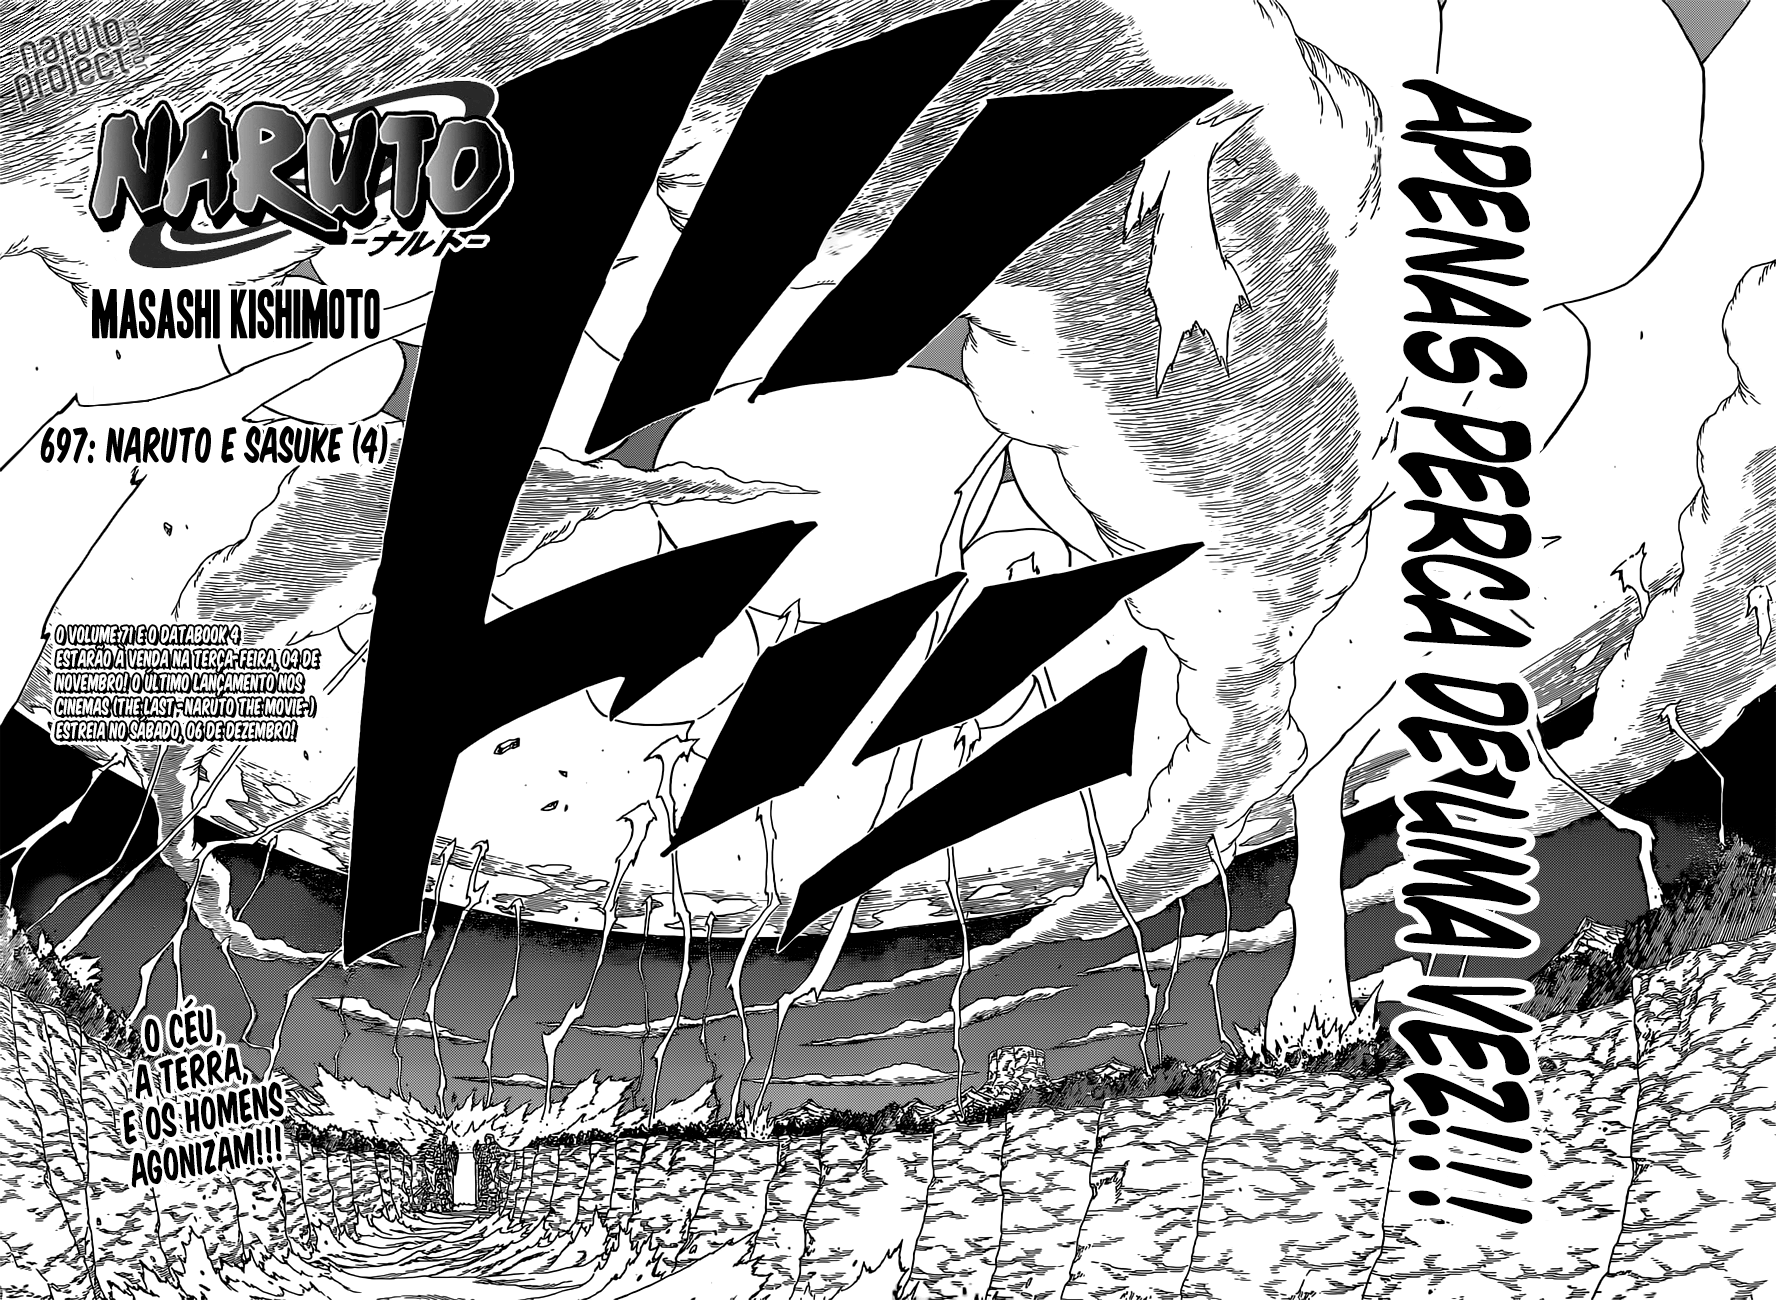 Naruto atual vs Sasuke atual - Página 5 02